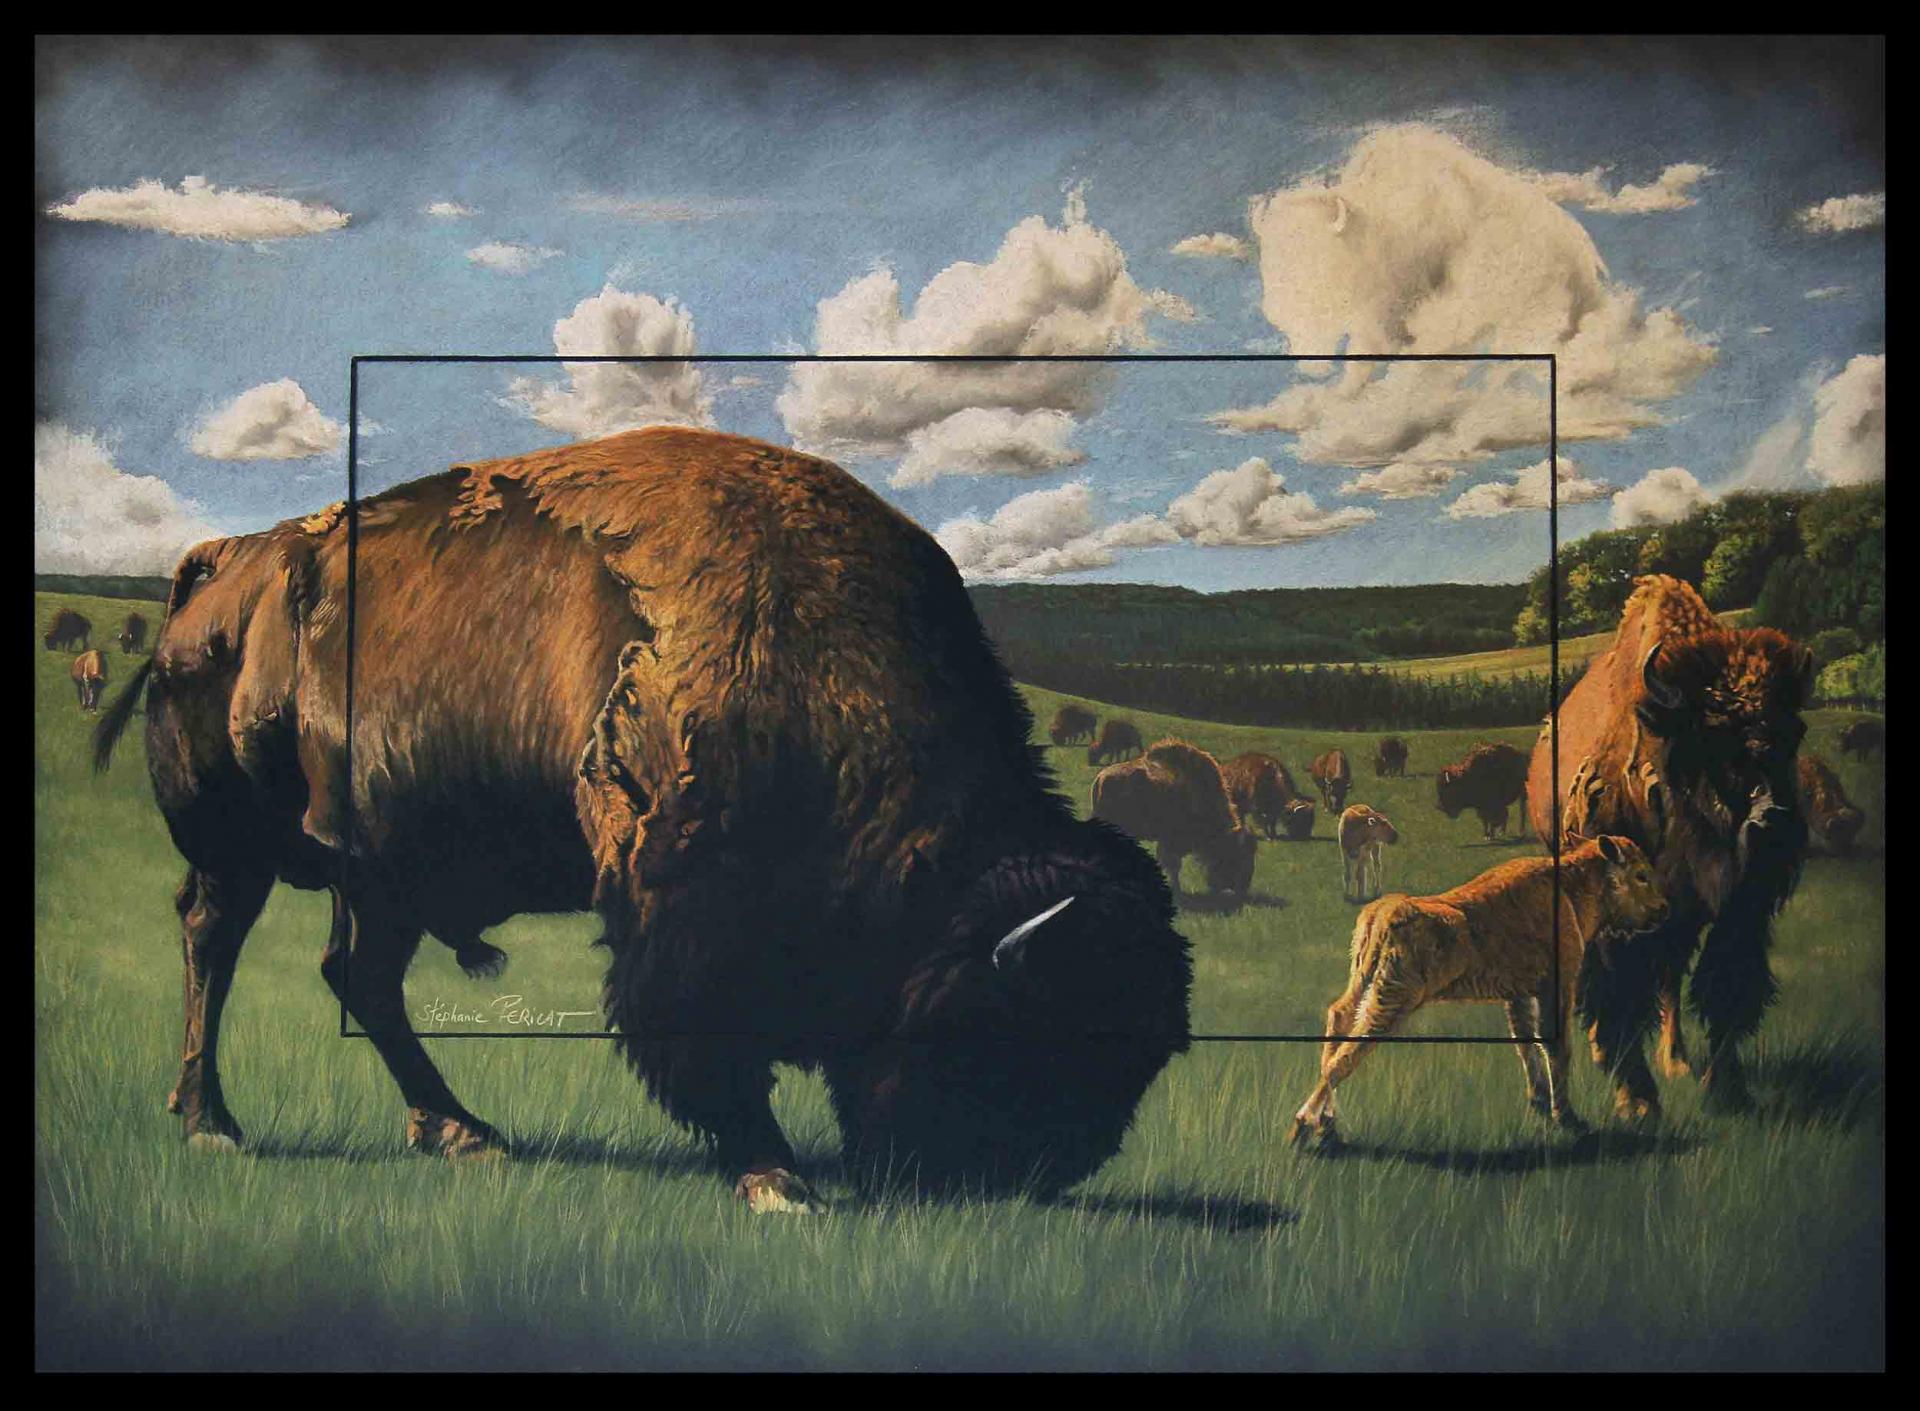 Tatanka (la légende du bison blanc) - 50x70 cm - Disponible